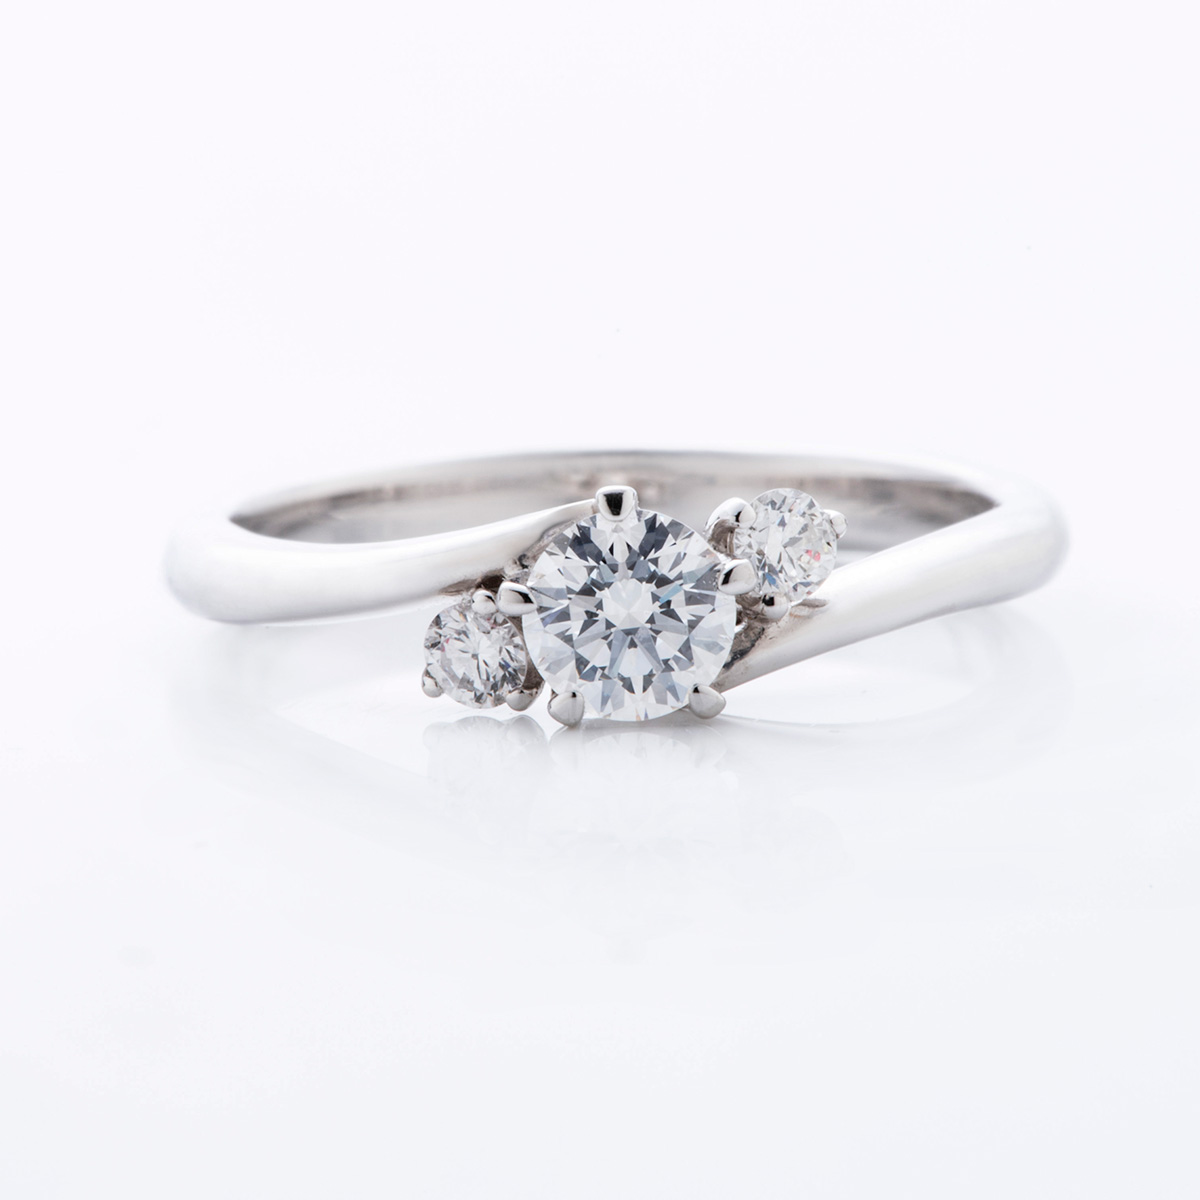 ブライダル | 福井の婚約指輪・結婚指輪 ジュエリー・スカラベ | 宝石、婚約指輪（エンゲージリング）結婚指輪（マリッジリング）の販売